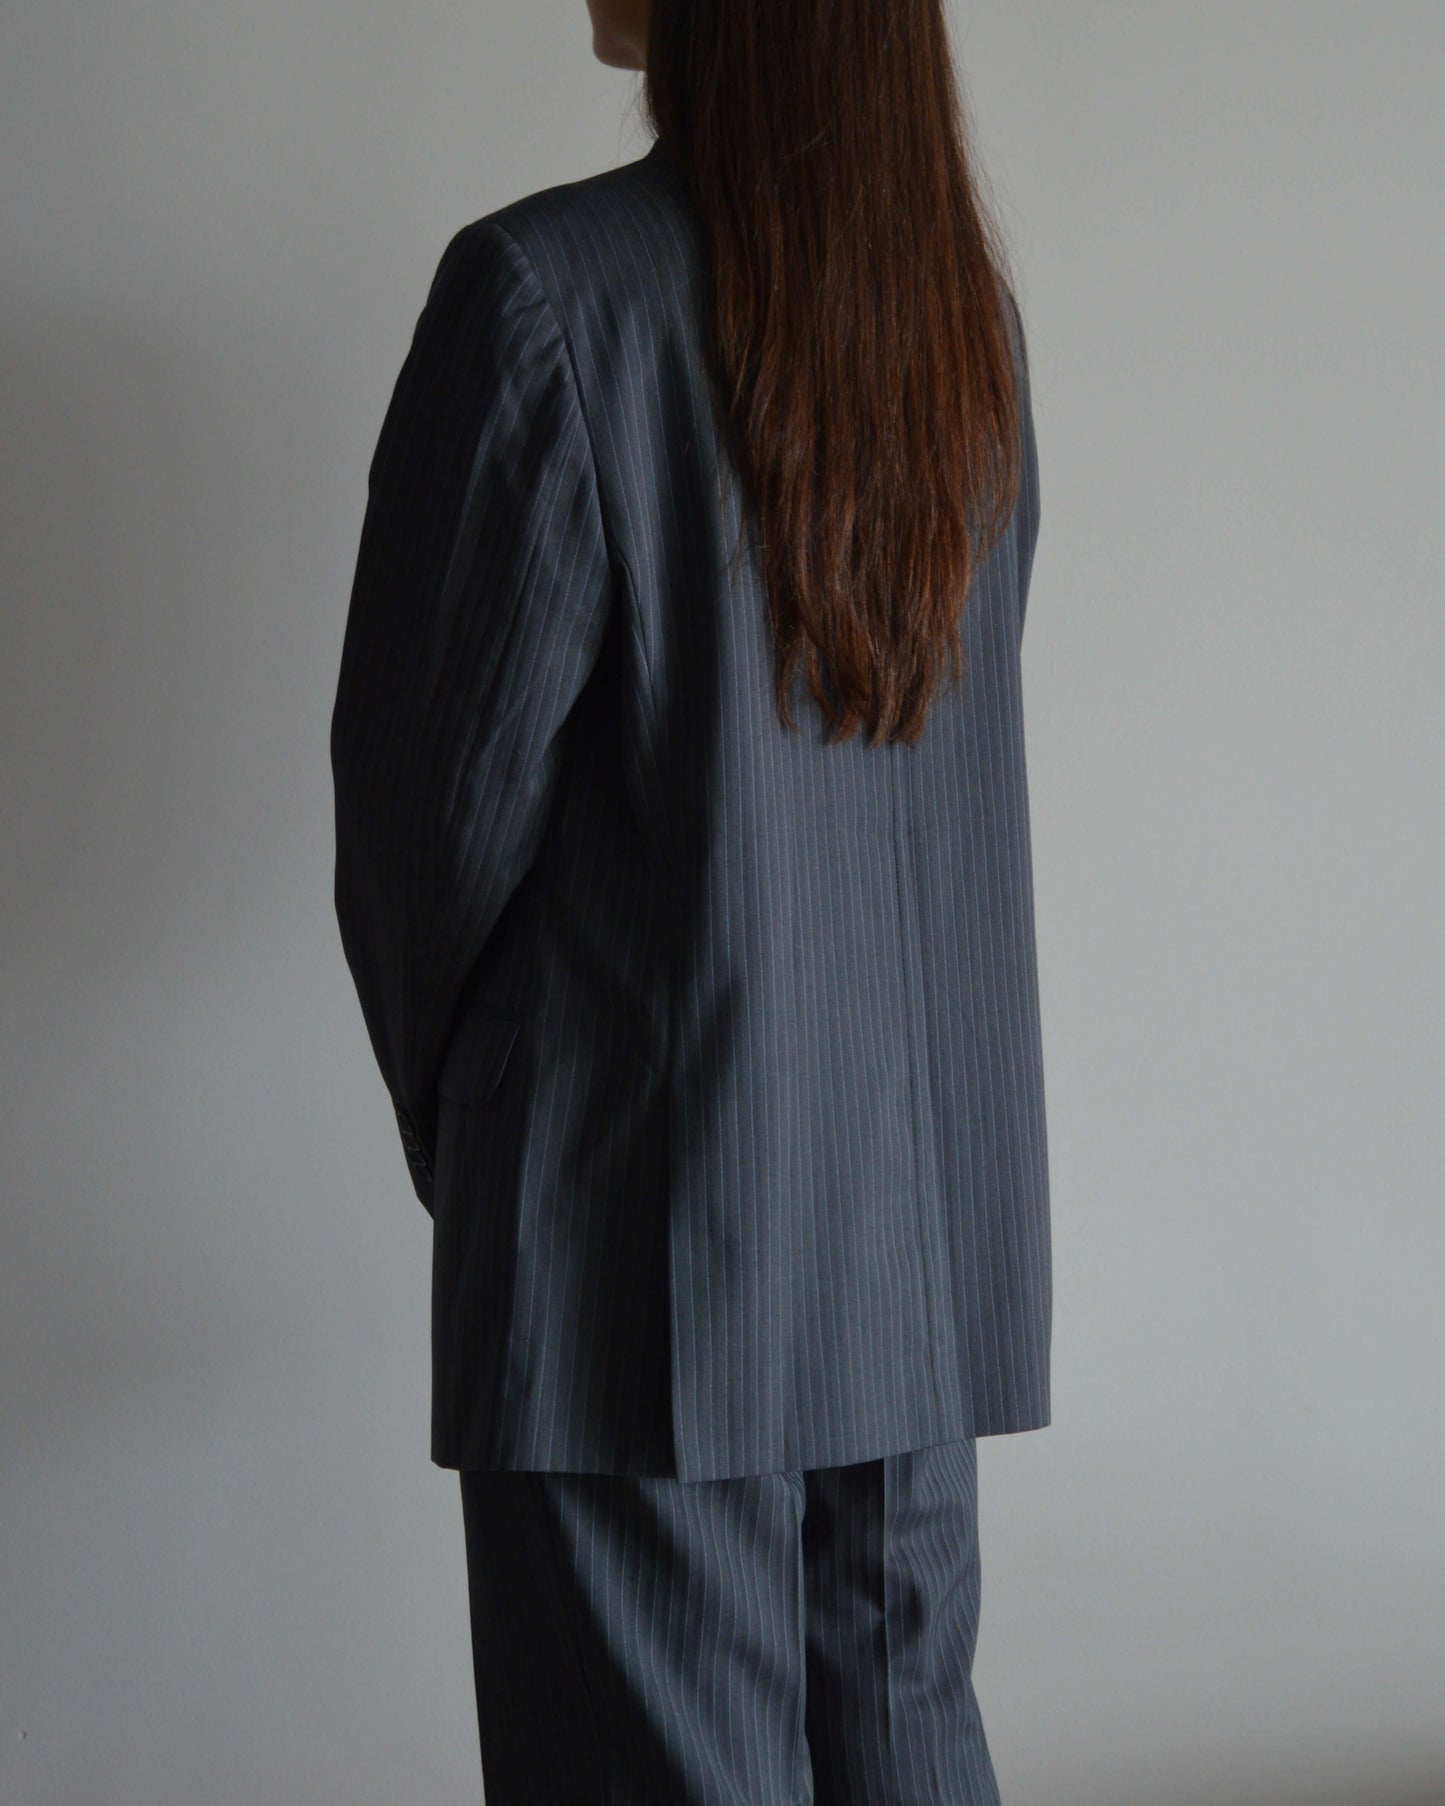 Suit - Gray Blue Lines (S/M)